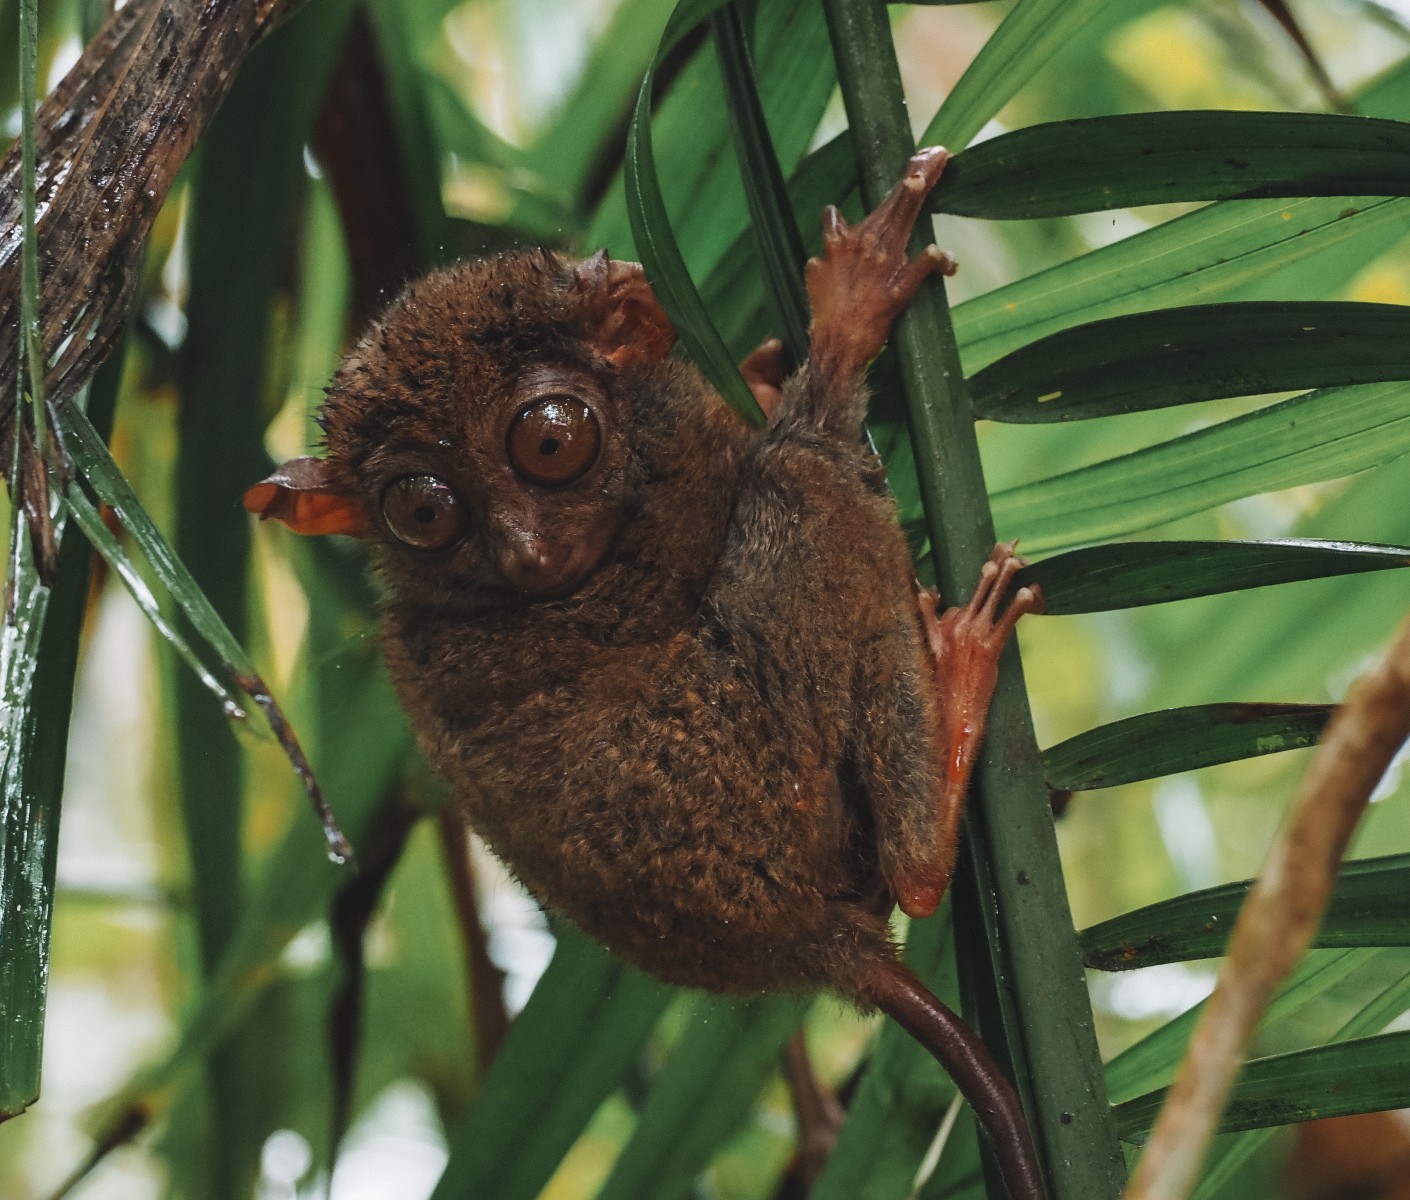 The Philippine tarsier